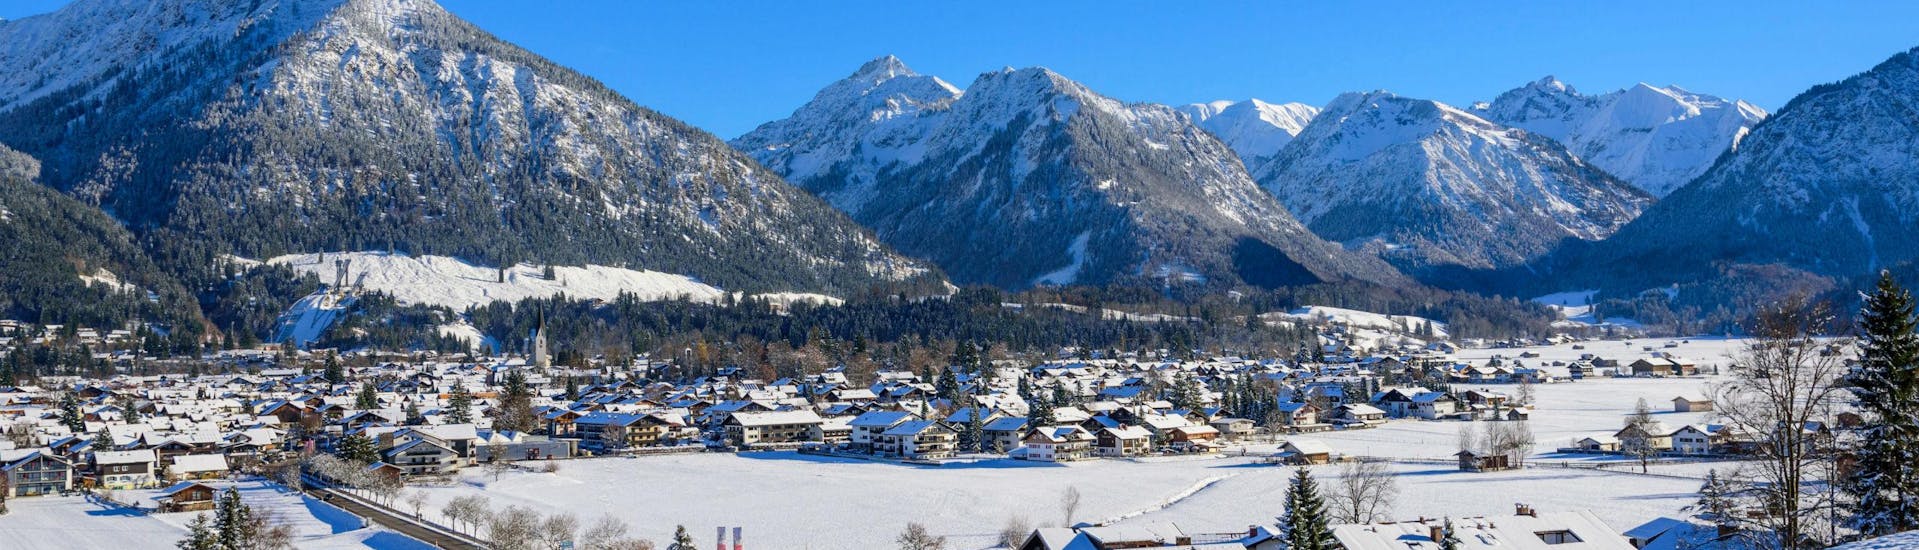 Ein Blick auf das Skigebiet Fellhorn/Kanzelwand nahe Oberstorf in den bayrischen Alpen, wo die örtlichen Skischulen eine Vielzahl an Skikursen anbieten. 